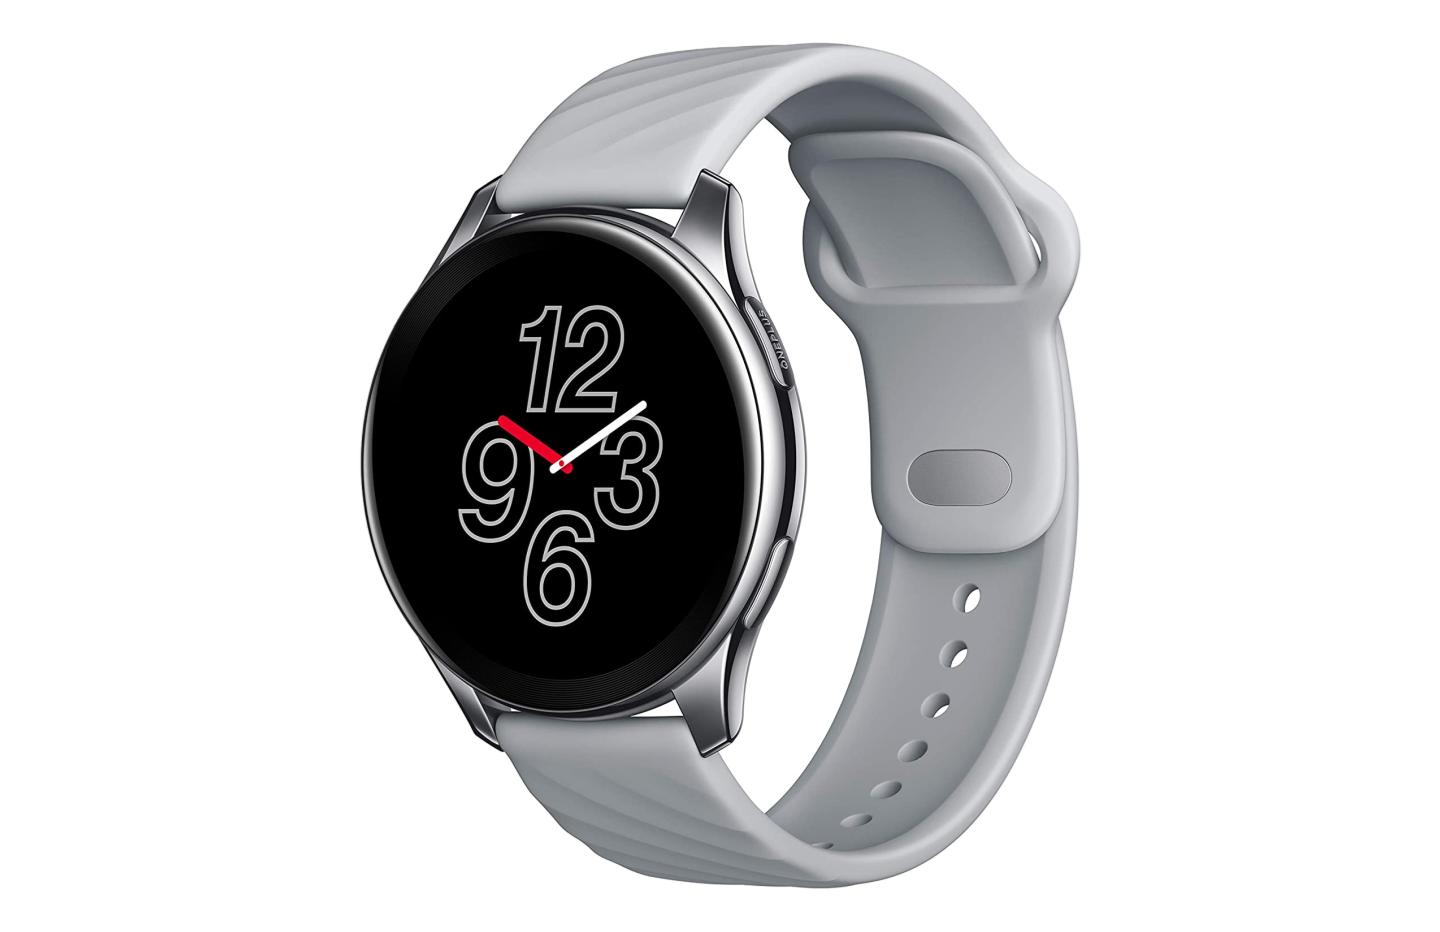 La montre connectée de la marque OnePlus est déjà en promotion sur Amazon